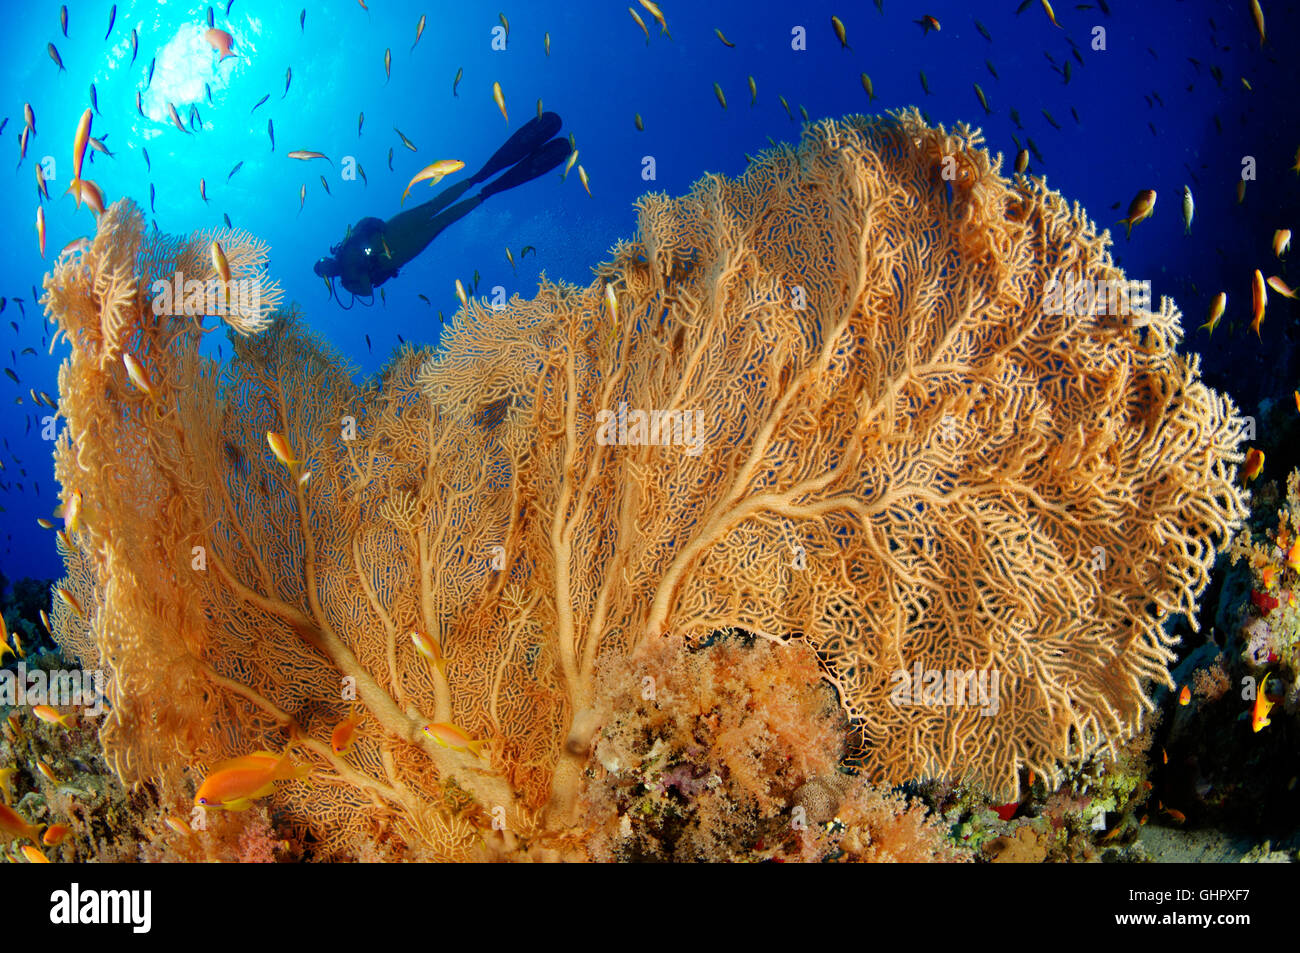 Korallenriff mit riesigen Gorgonien oder Gorgonien und Scuba Diver, Hurghada, Giftun Island Reef, Rotes Meer, Ägypten Stockfoto